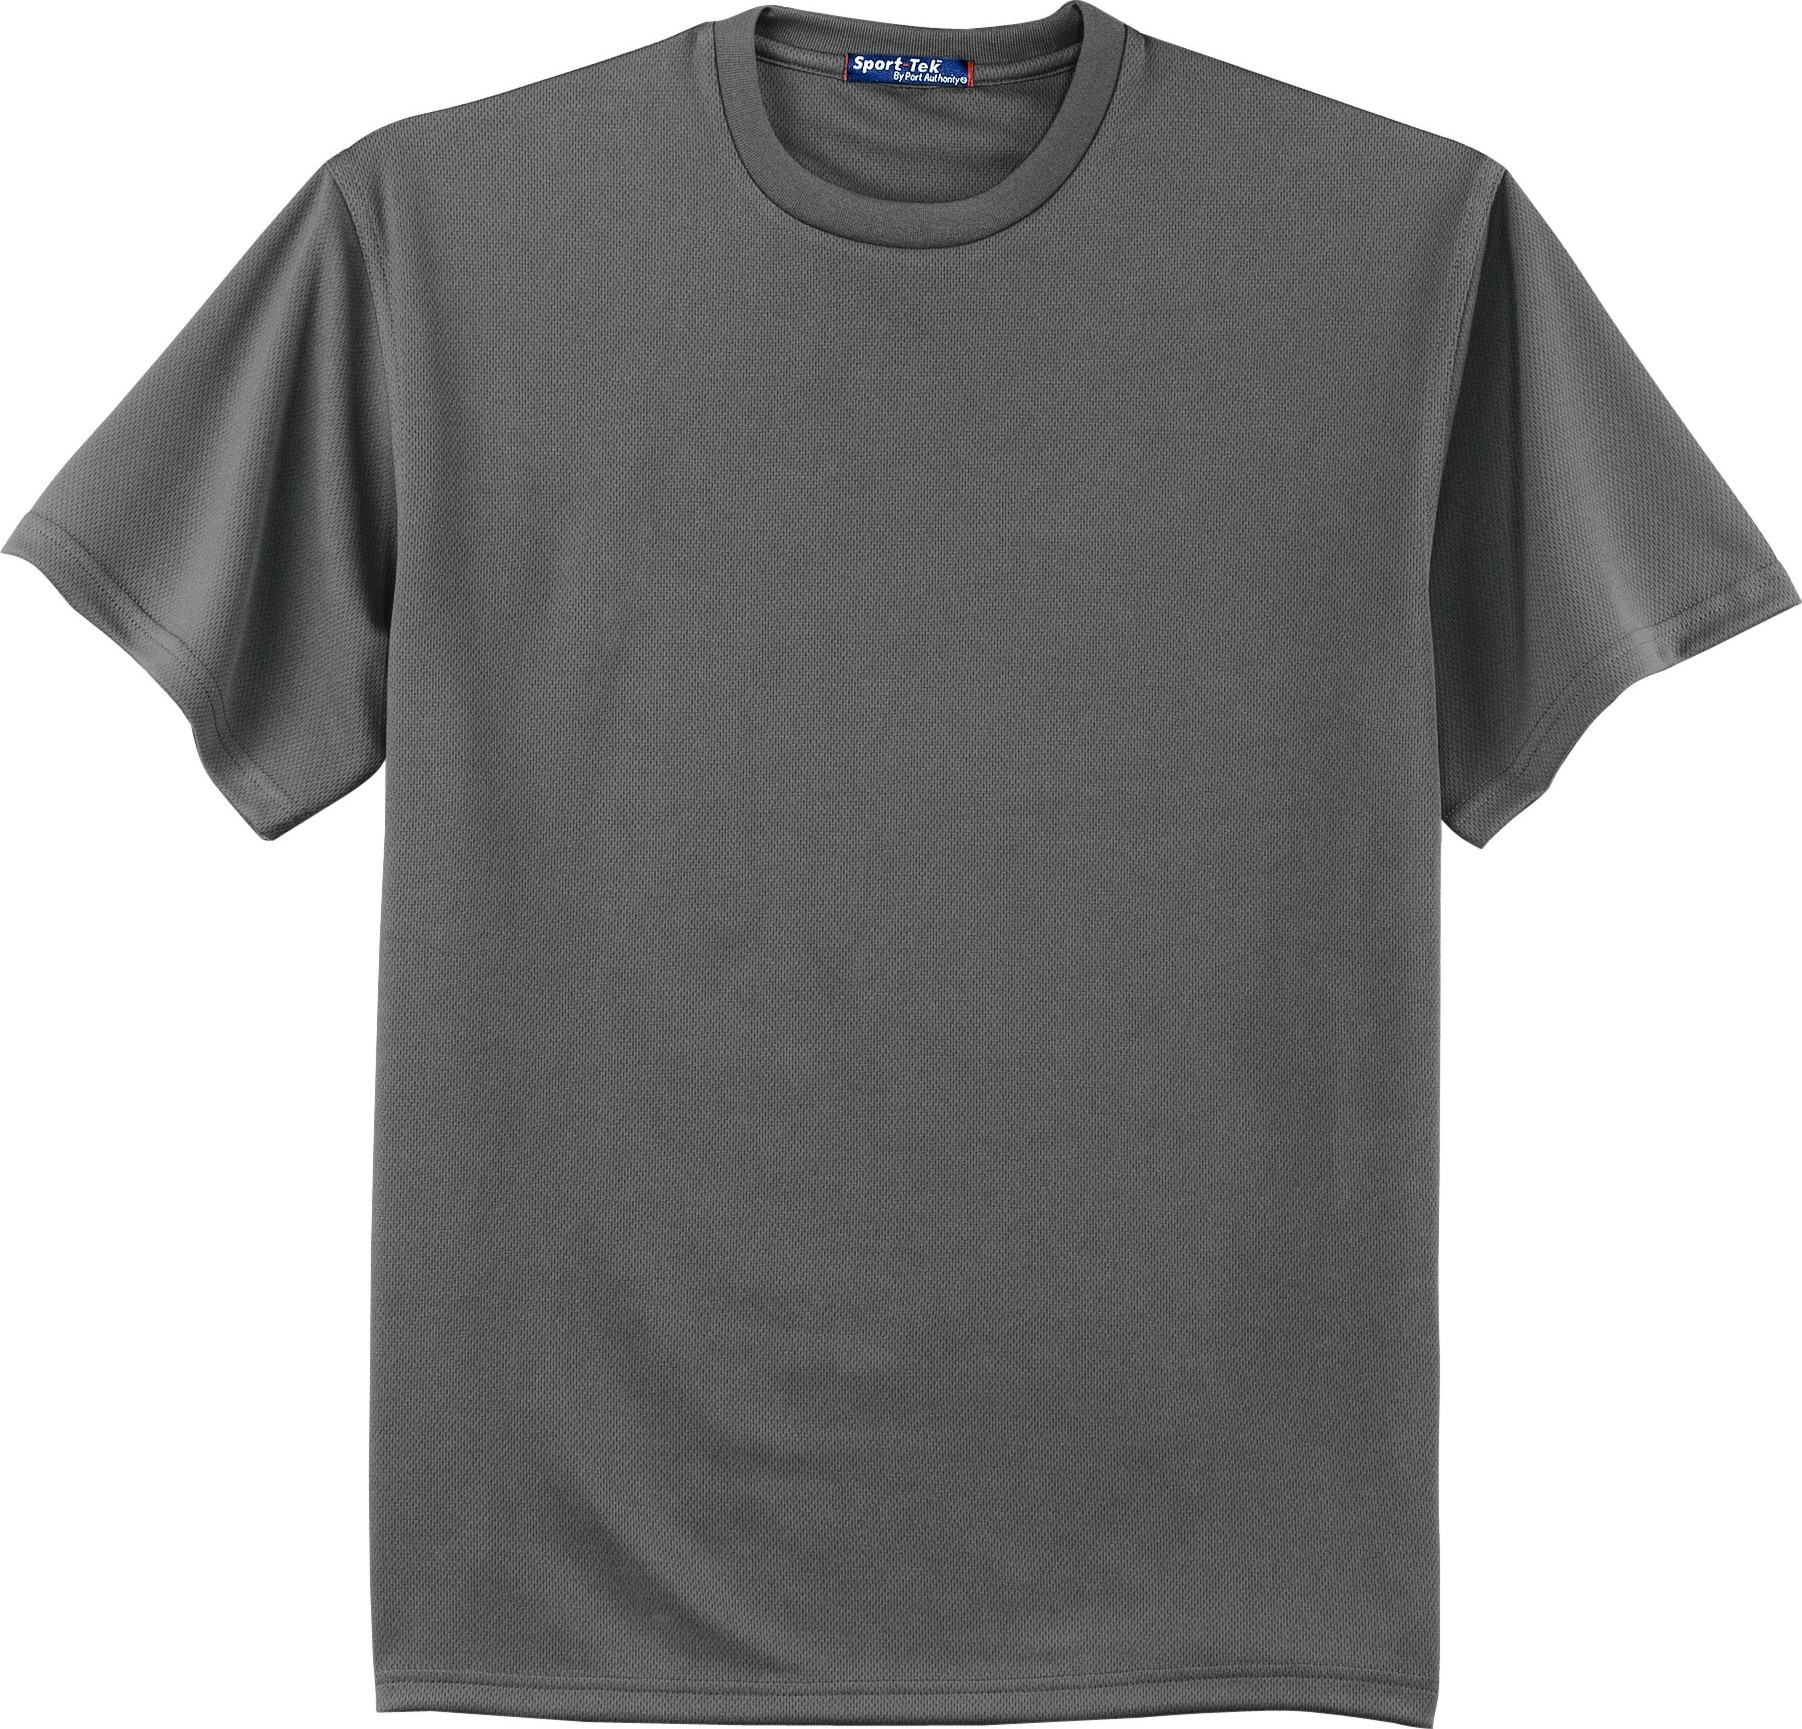 T Shirt Template Gray